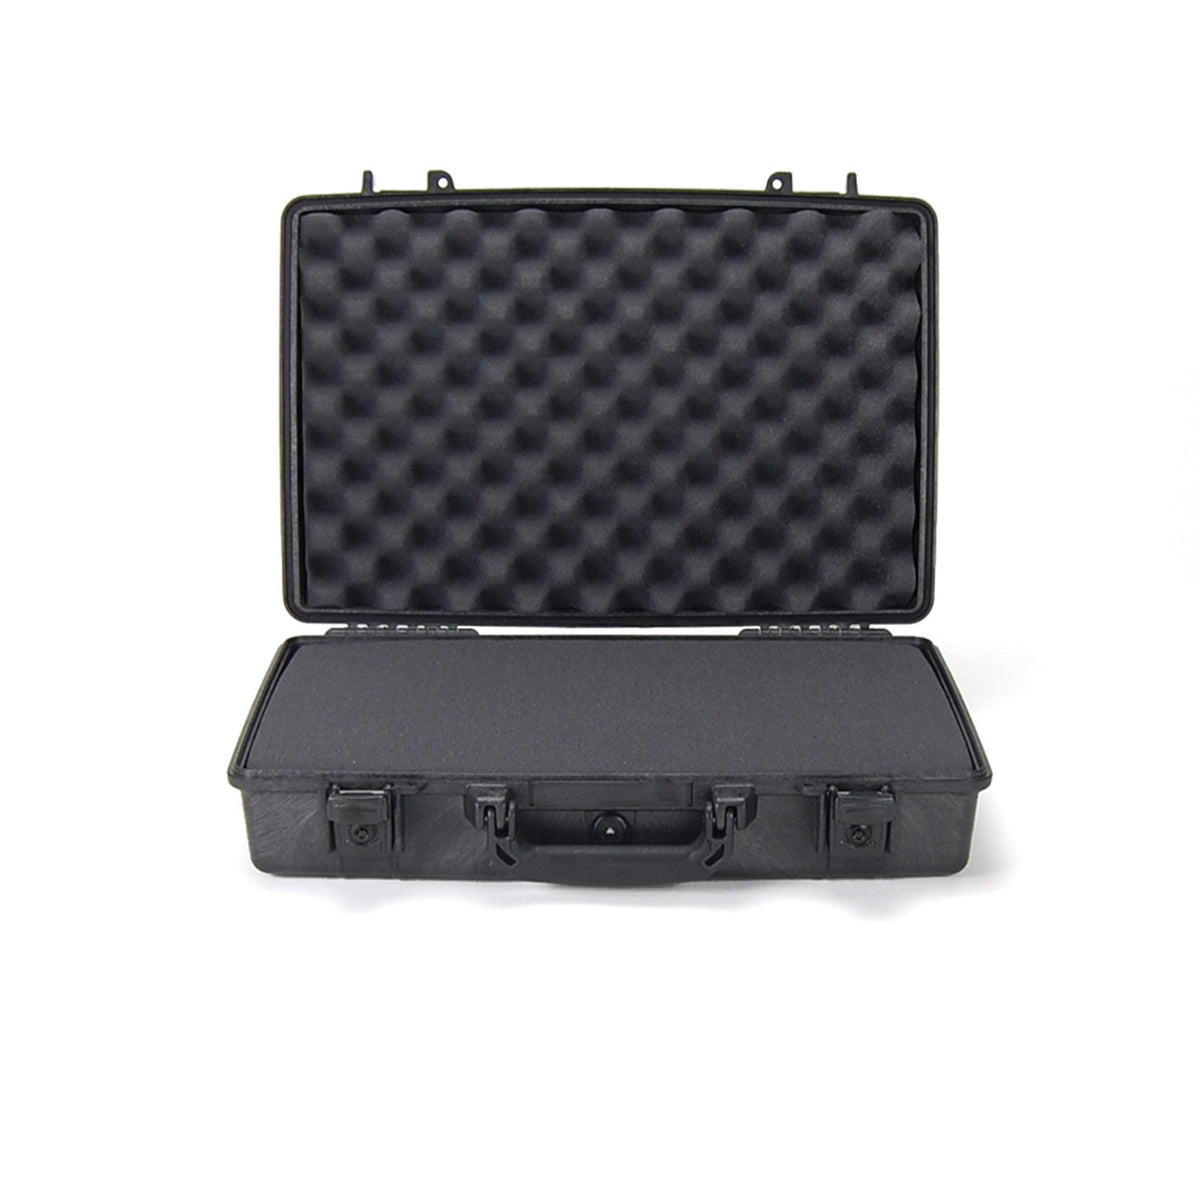 Peli 1495 Lockable Laptop Briefcase - Peli UK